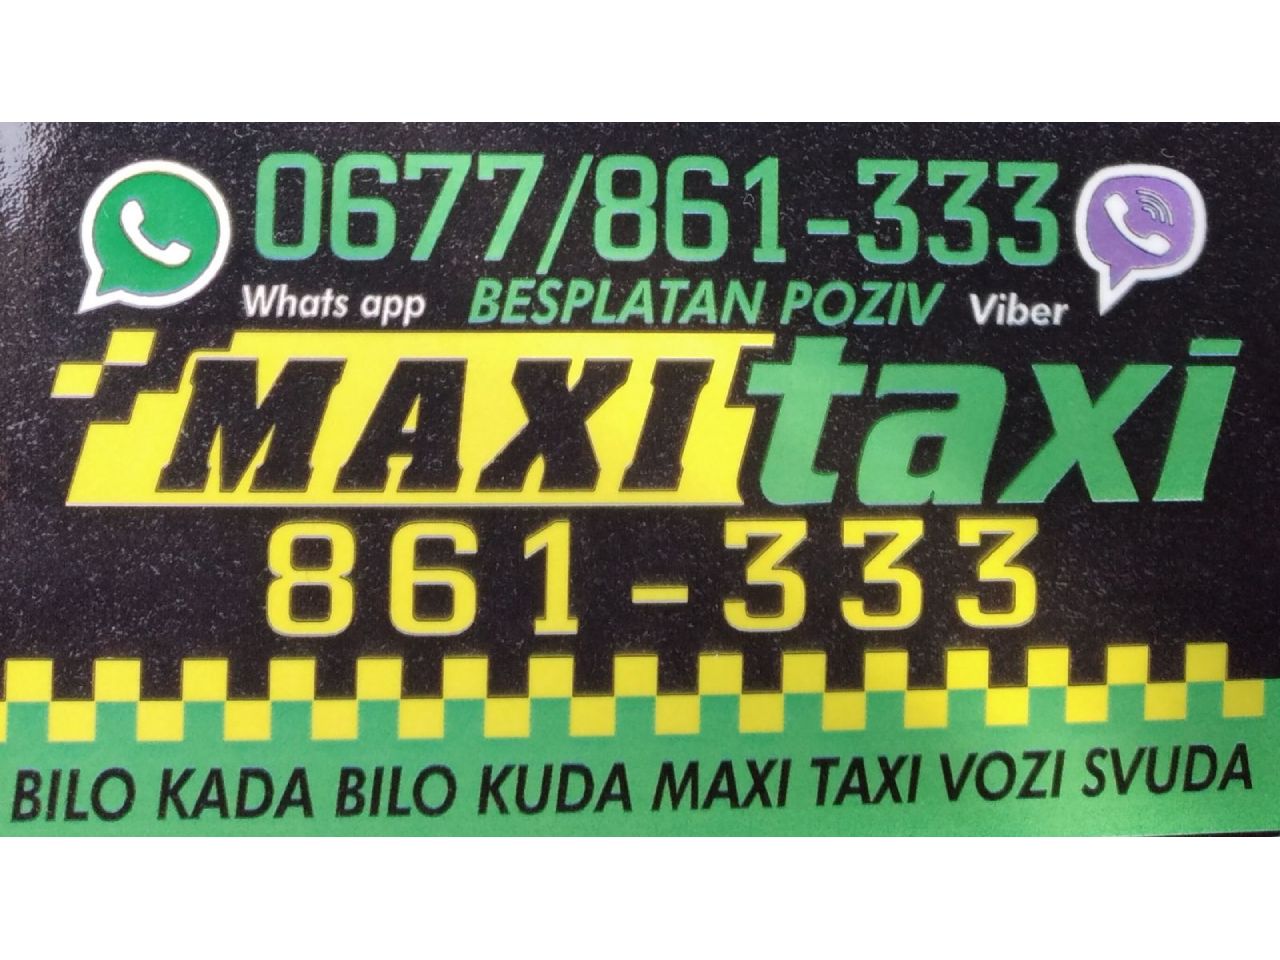 Photo 8 - OUR MAXI TAXI - TAXI services, Bajina Basta